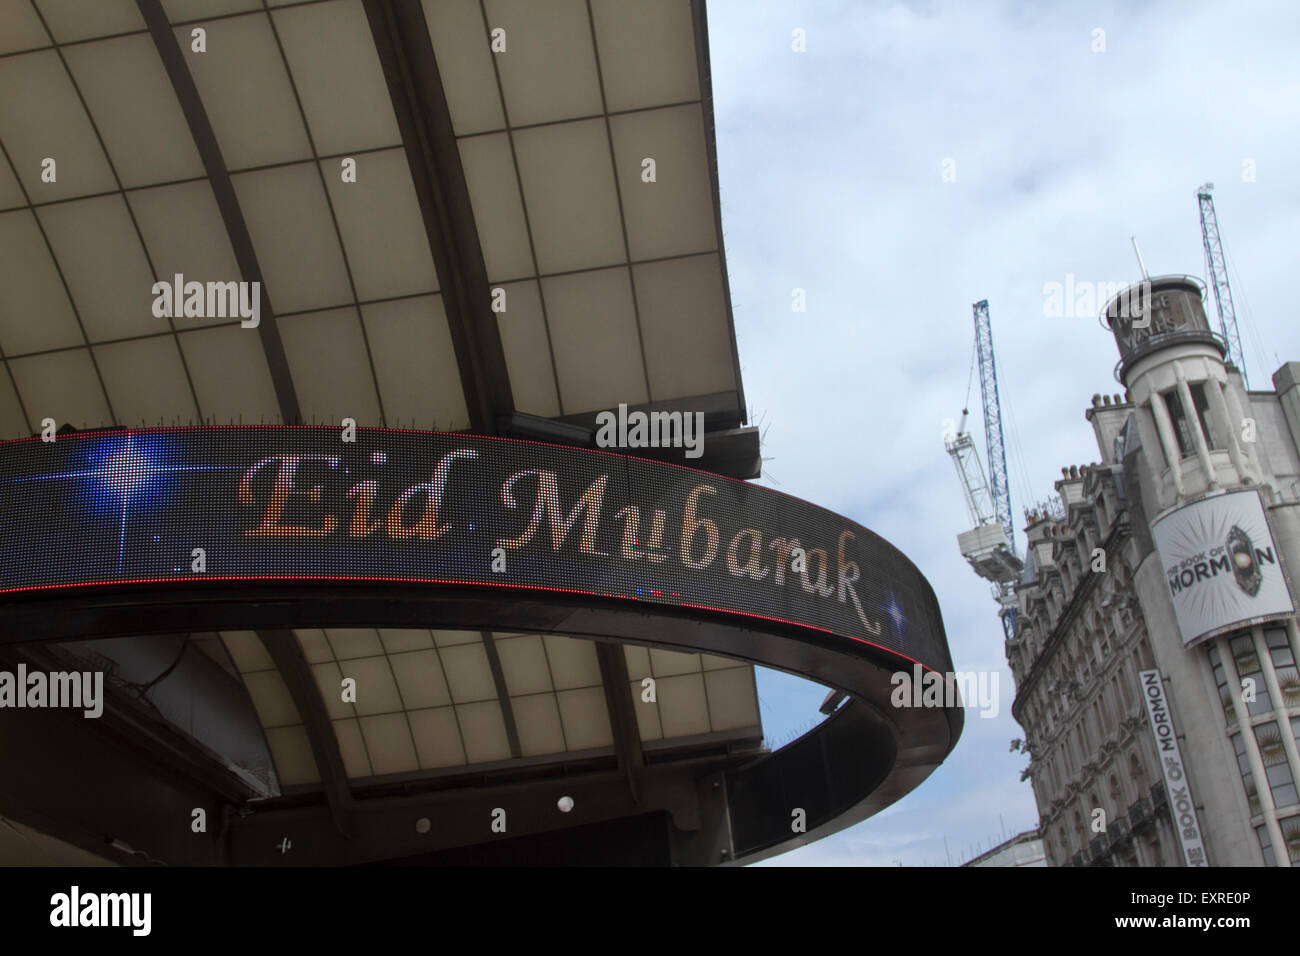 Piccadilly London, UK. 16. Juli 2015. Eine elektronische Unterschrift auf dem London Trocadero blinkt Eid Mubarak, wie Muslime bereiten Sie bis zum Ende des Heiligen Monats Ramadan und Fasten Credit feiern: Amer Ghazzal/Alamy Live-Nachrichten Stockfoto